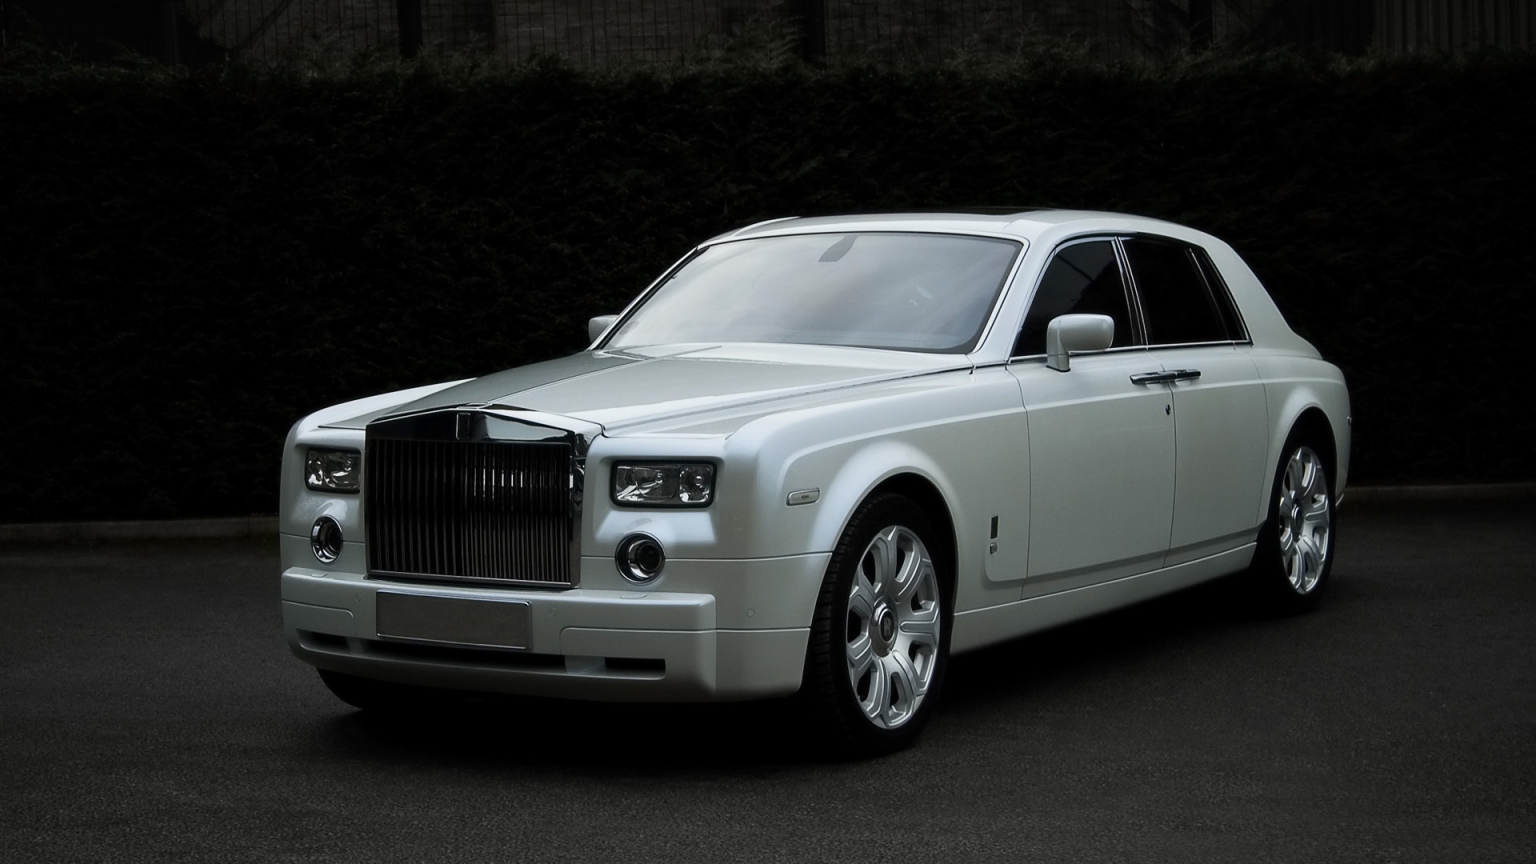 Rolls Royce White for 1536 x 864 HDTV resolution